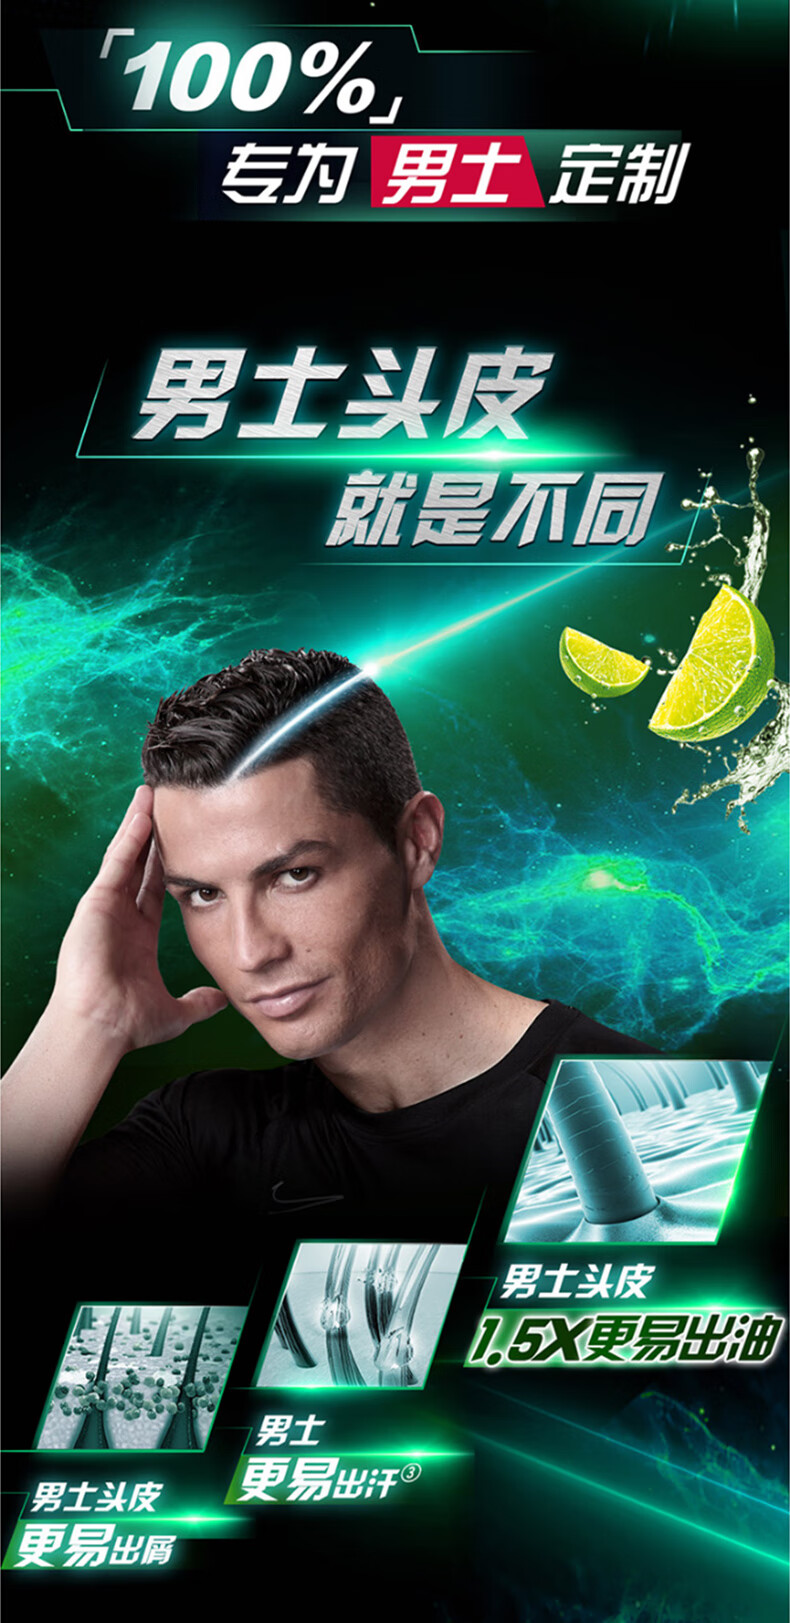 清扬男士洗发水广告图片